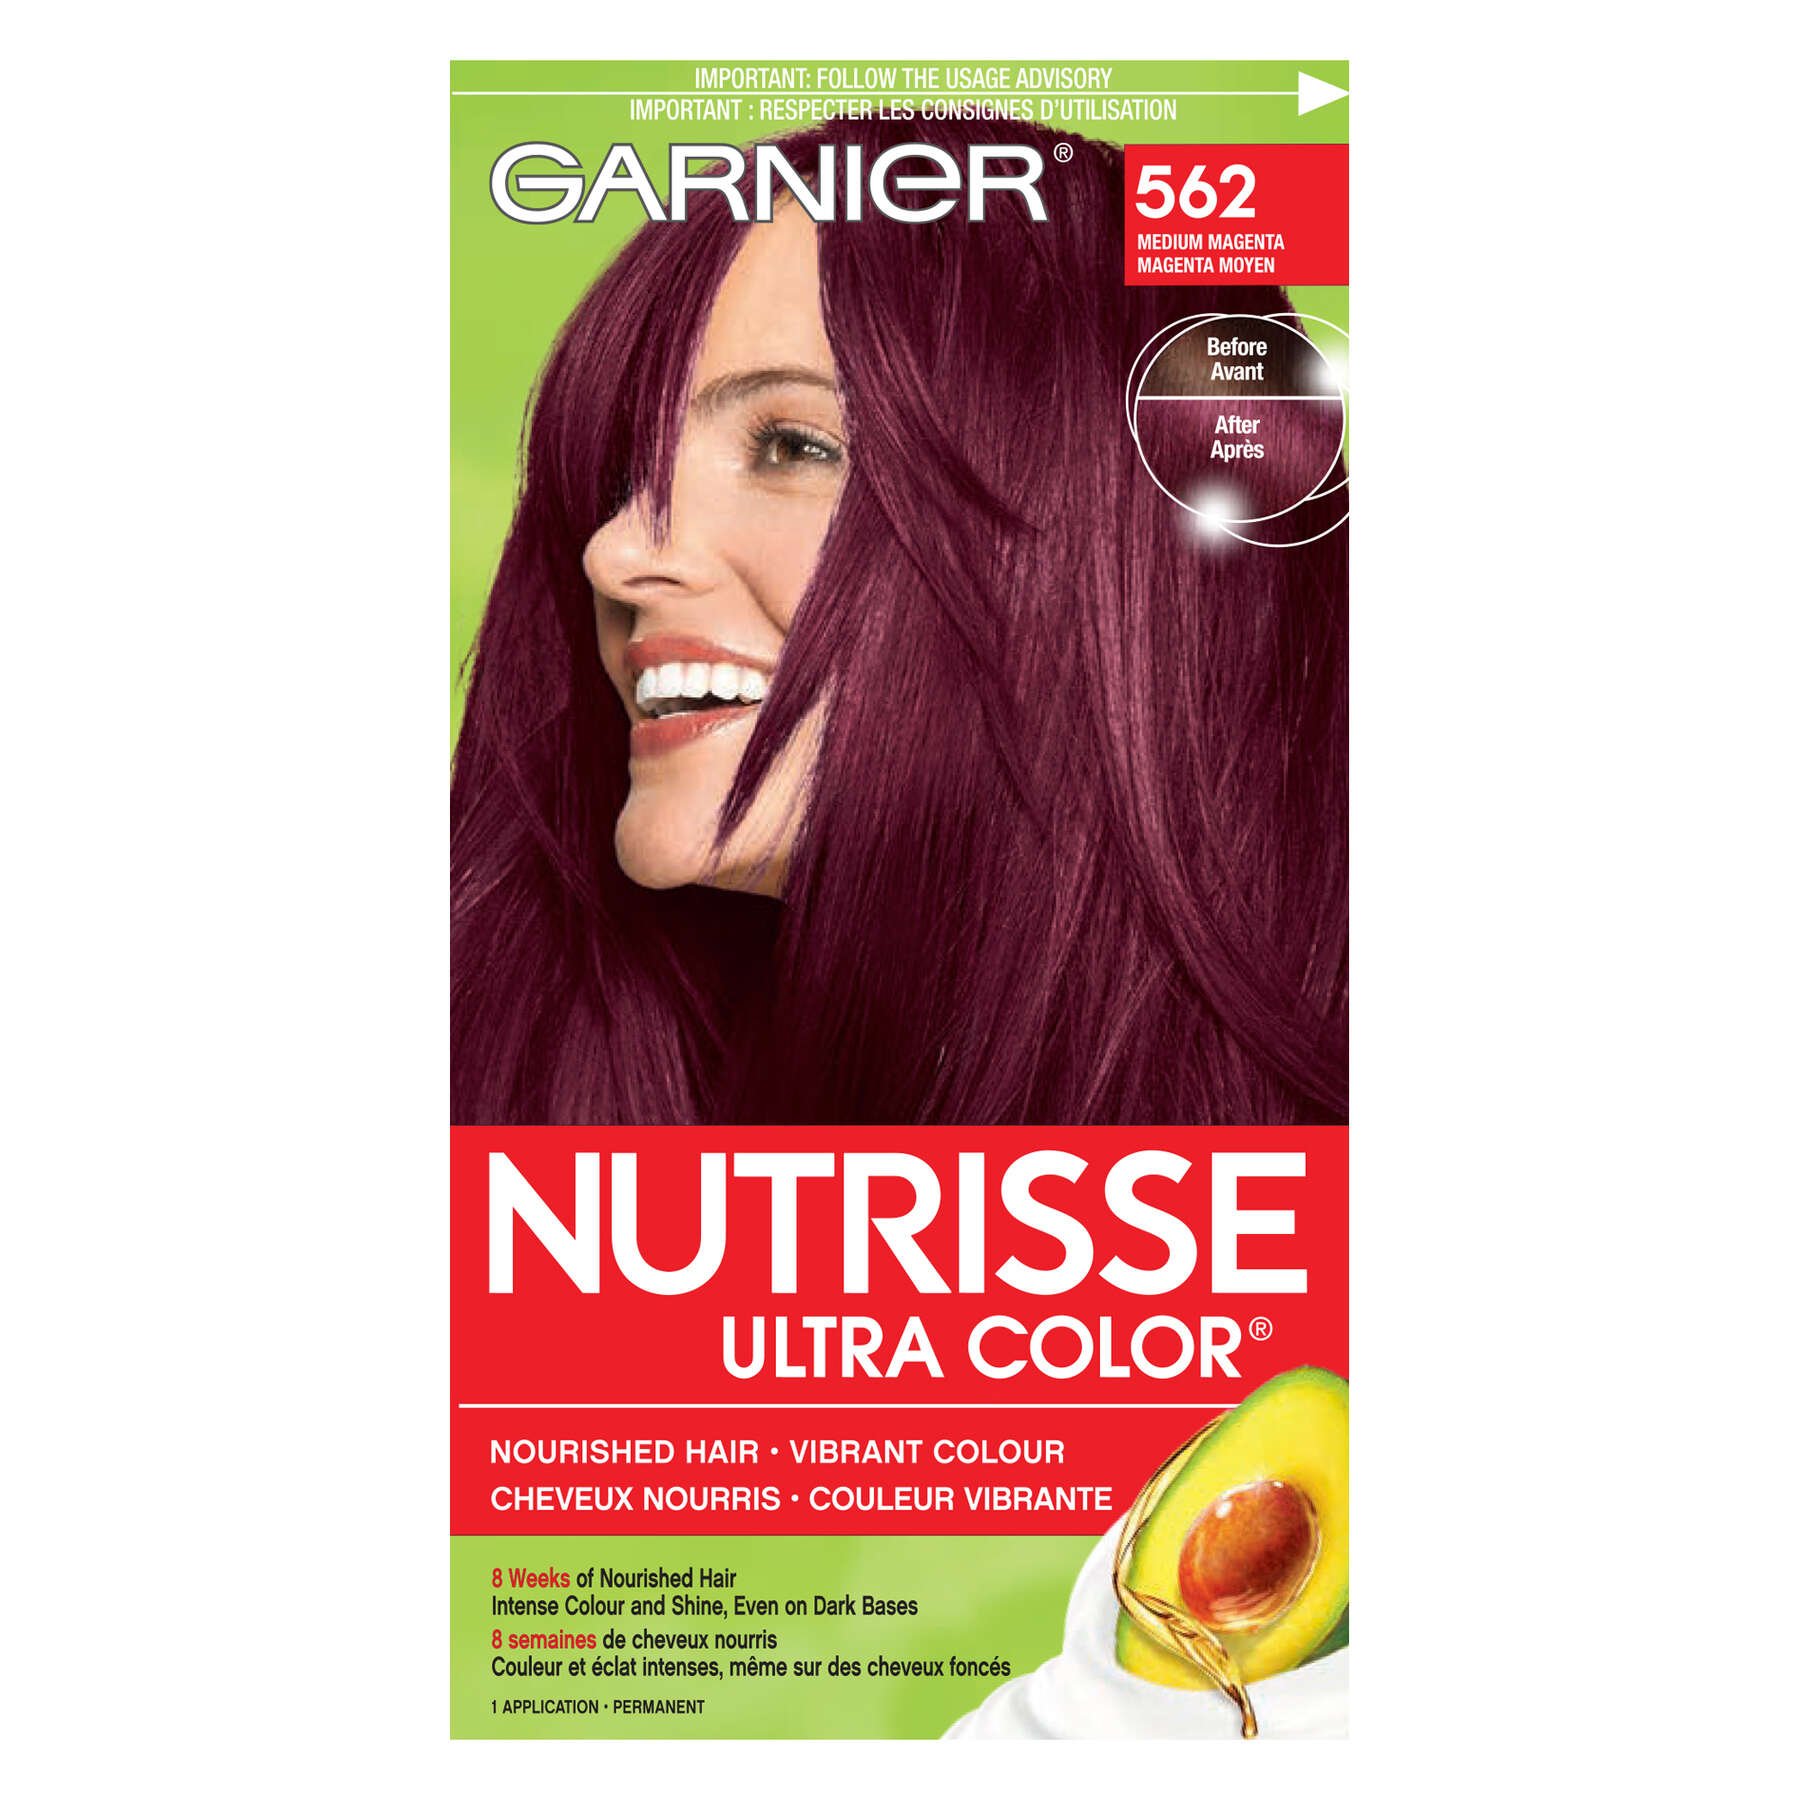 garnier hair dye nutrisse ultra color 562 medium magenta 0603084558957 t1